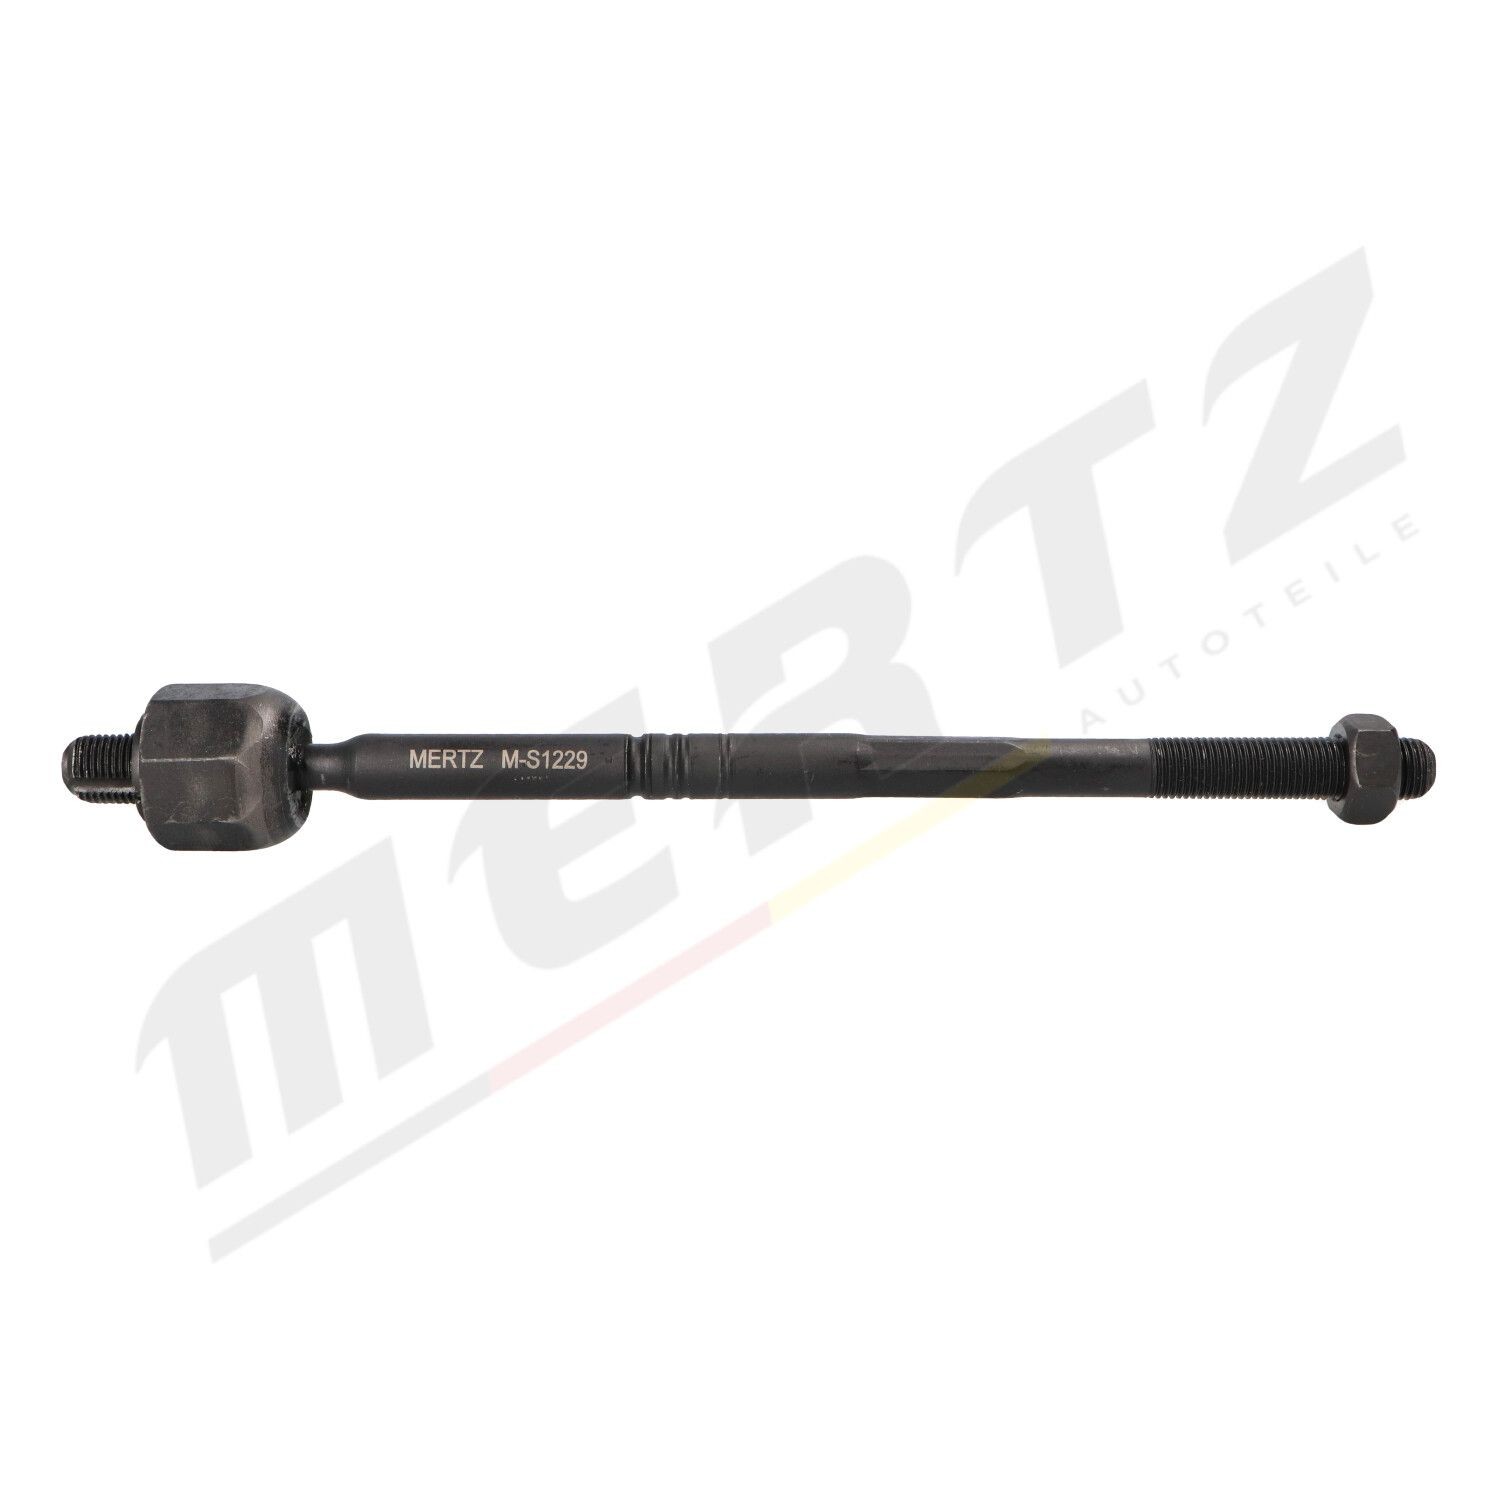 MERTZ M-S1229 OPEL ASTRA 2013 Inner track rod